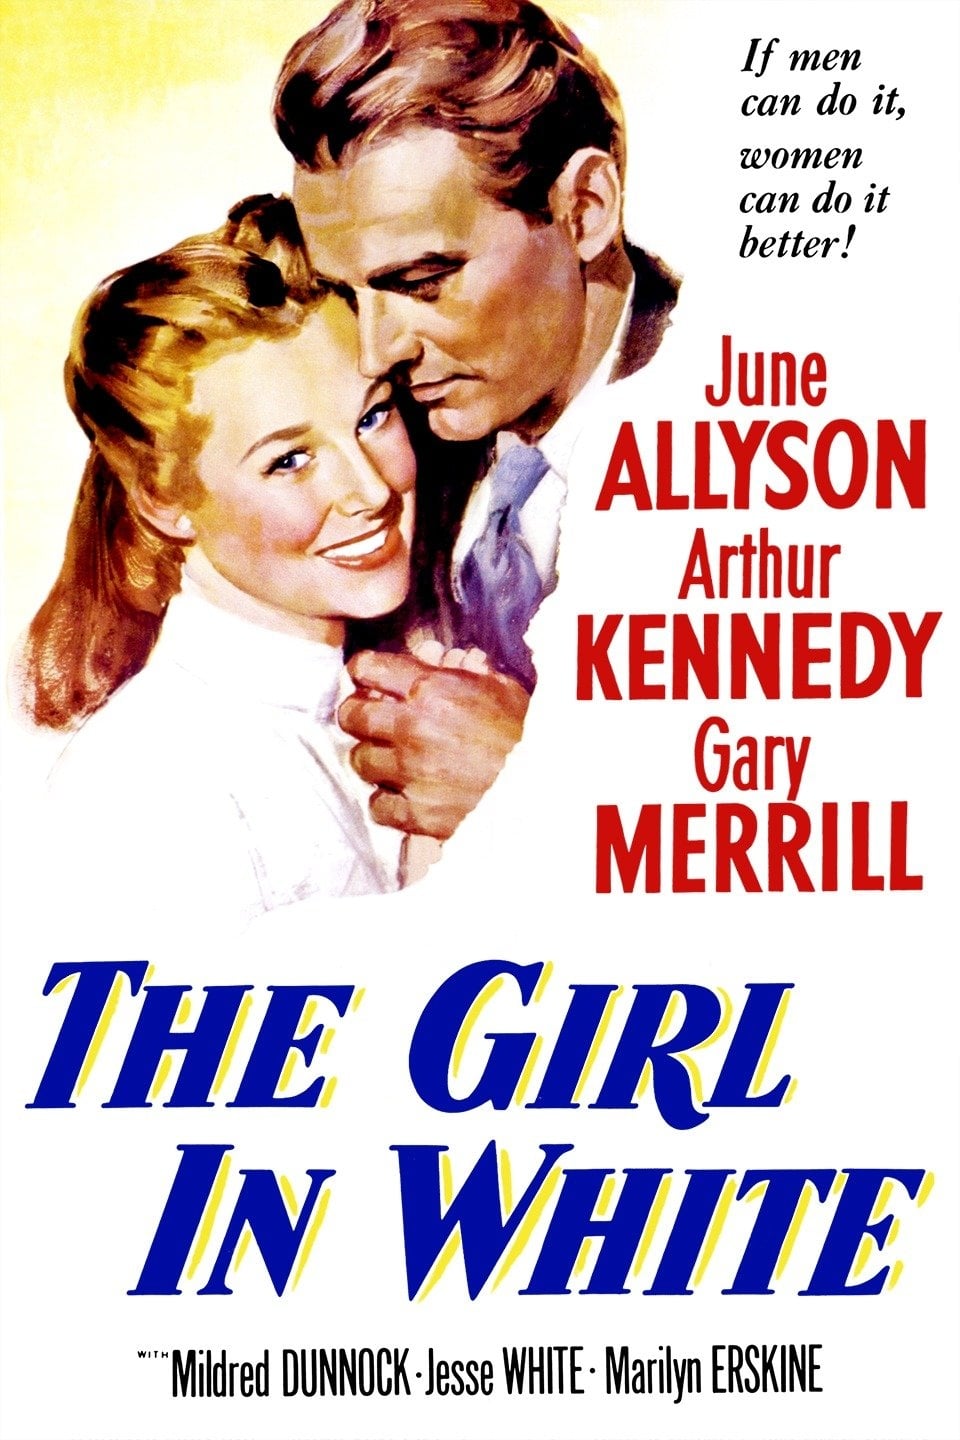 The Girl in White (1952)